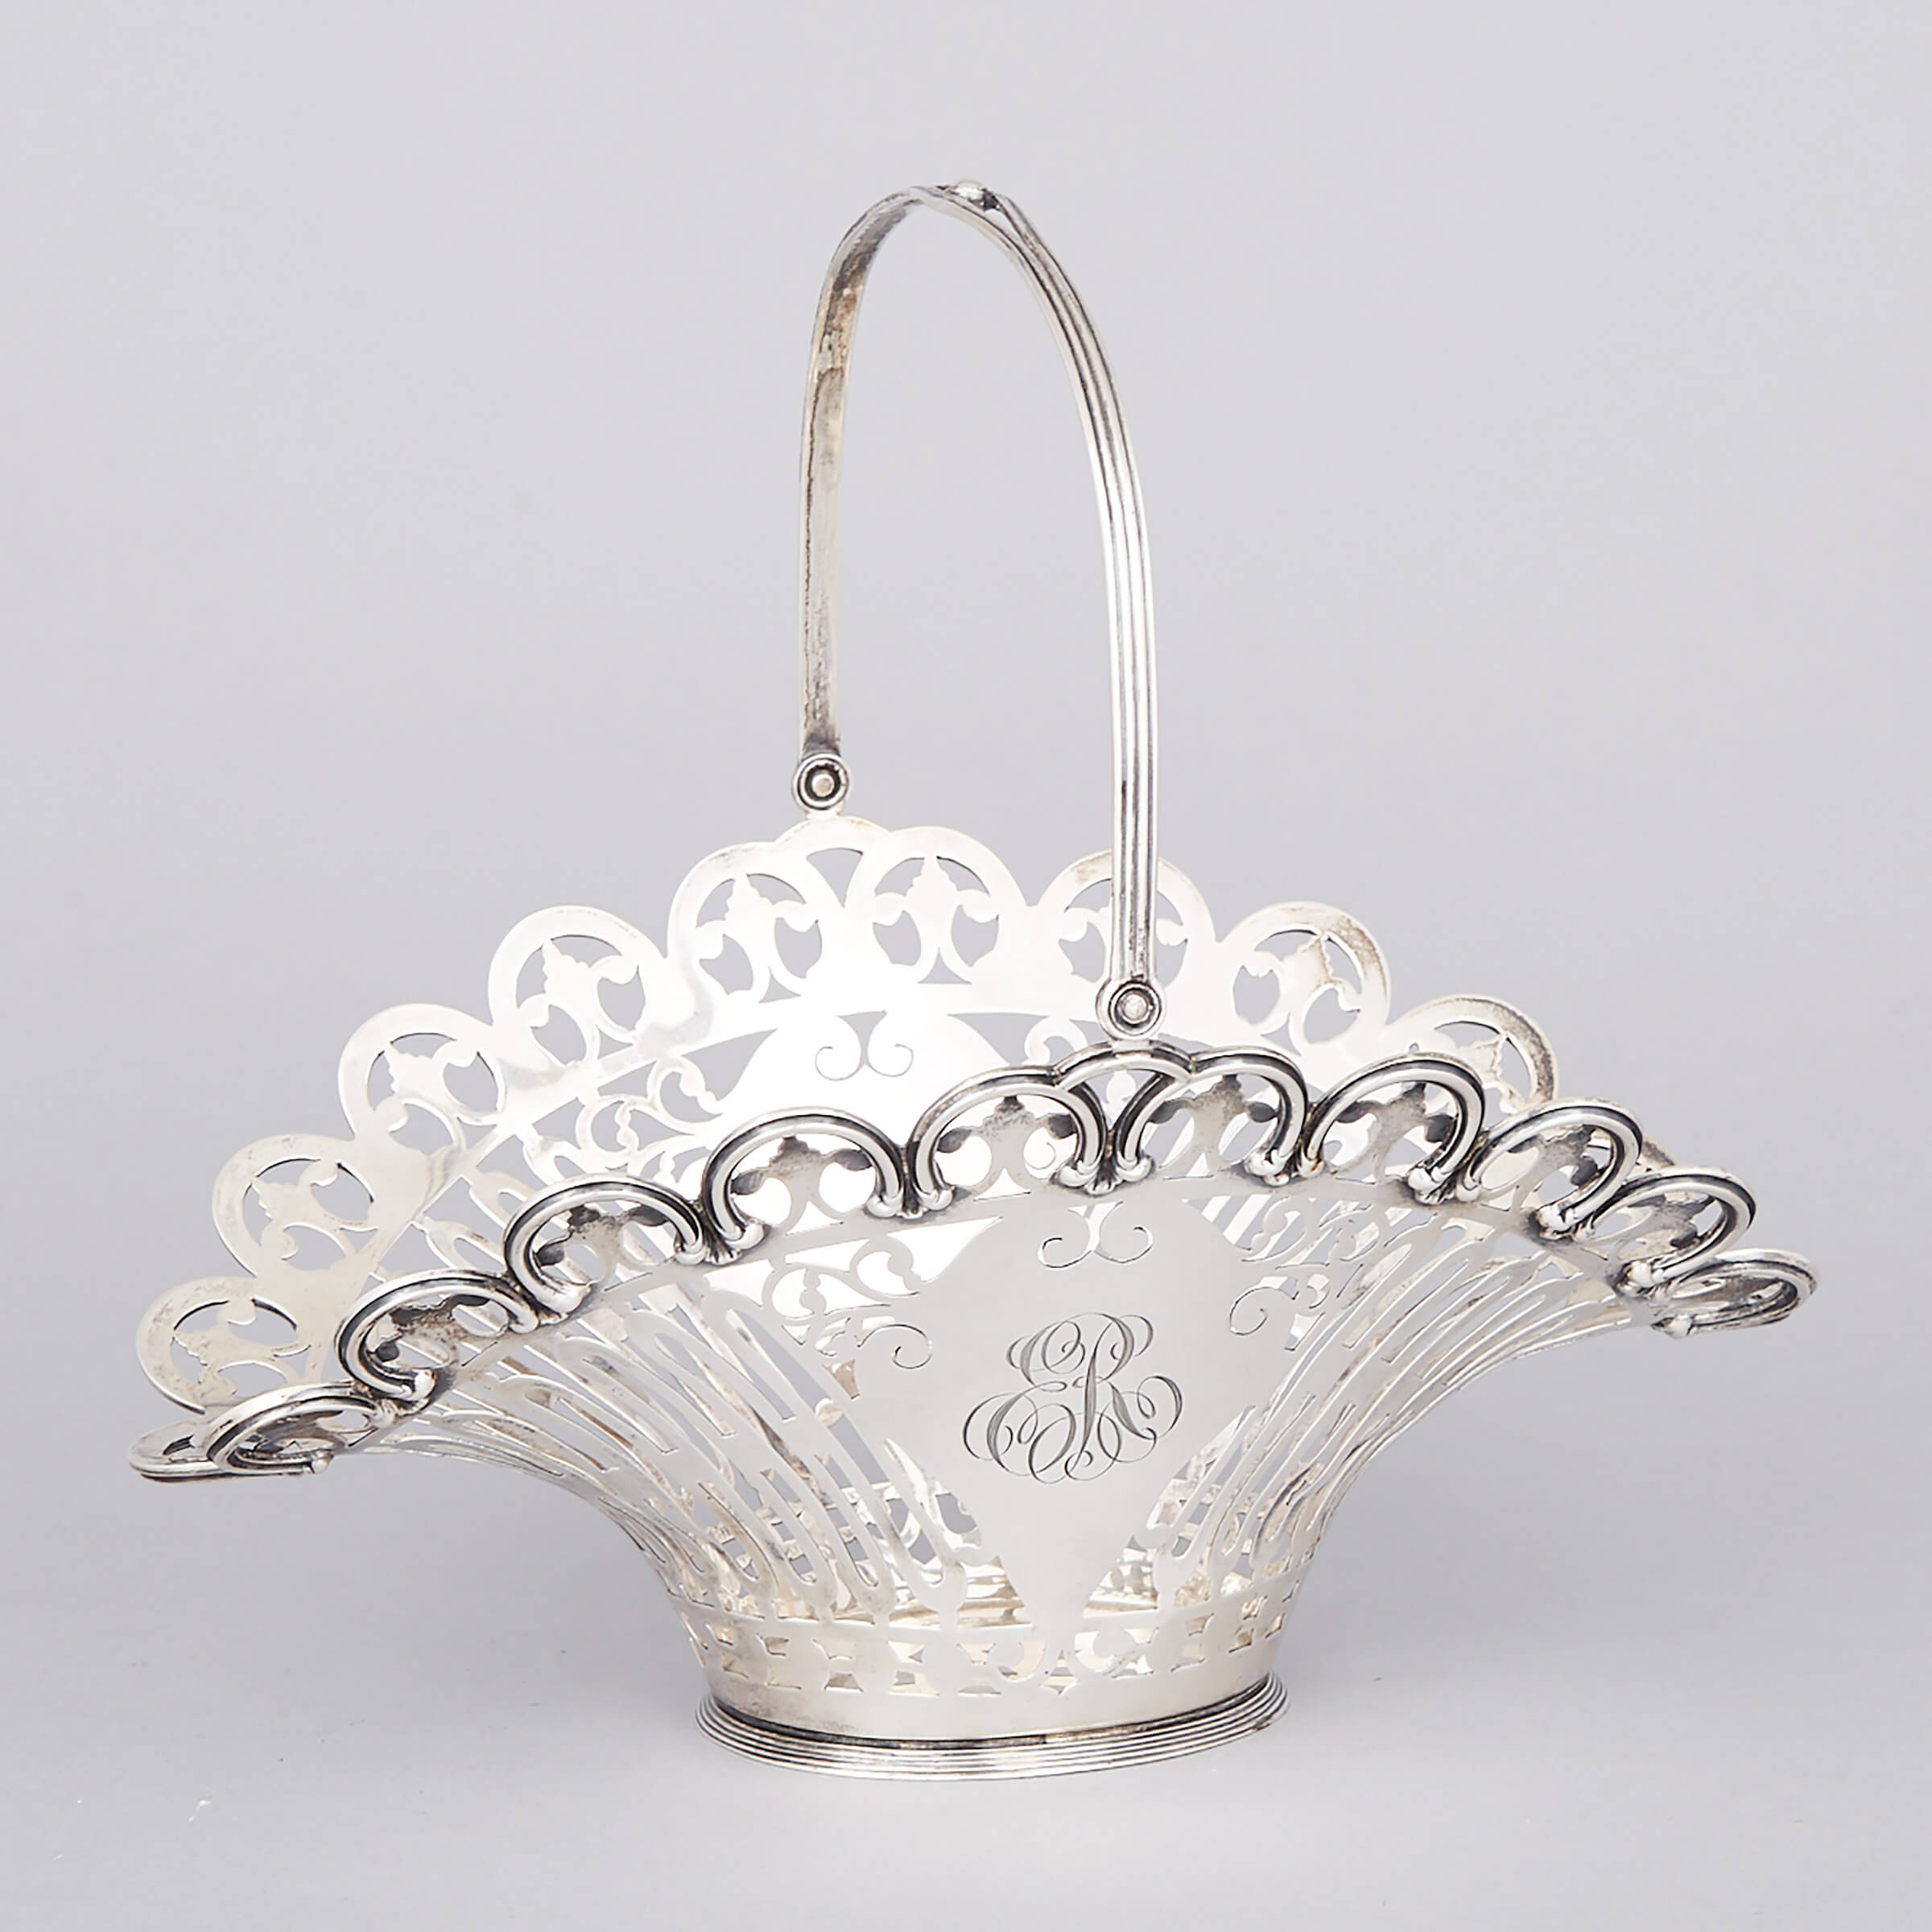 American Silver Pierced Basket, Black, Starr & Frost, New York, N.Y., c.1900